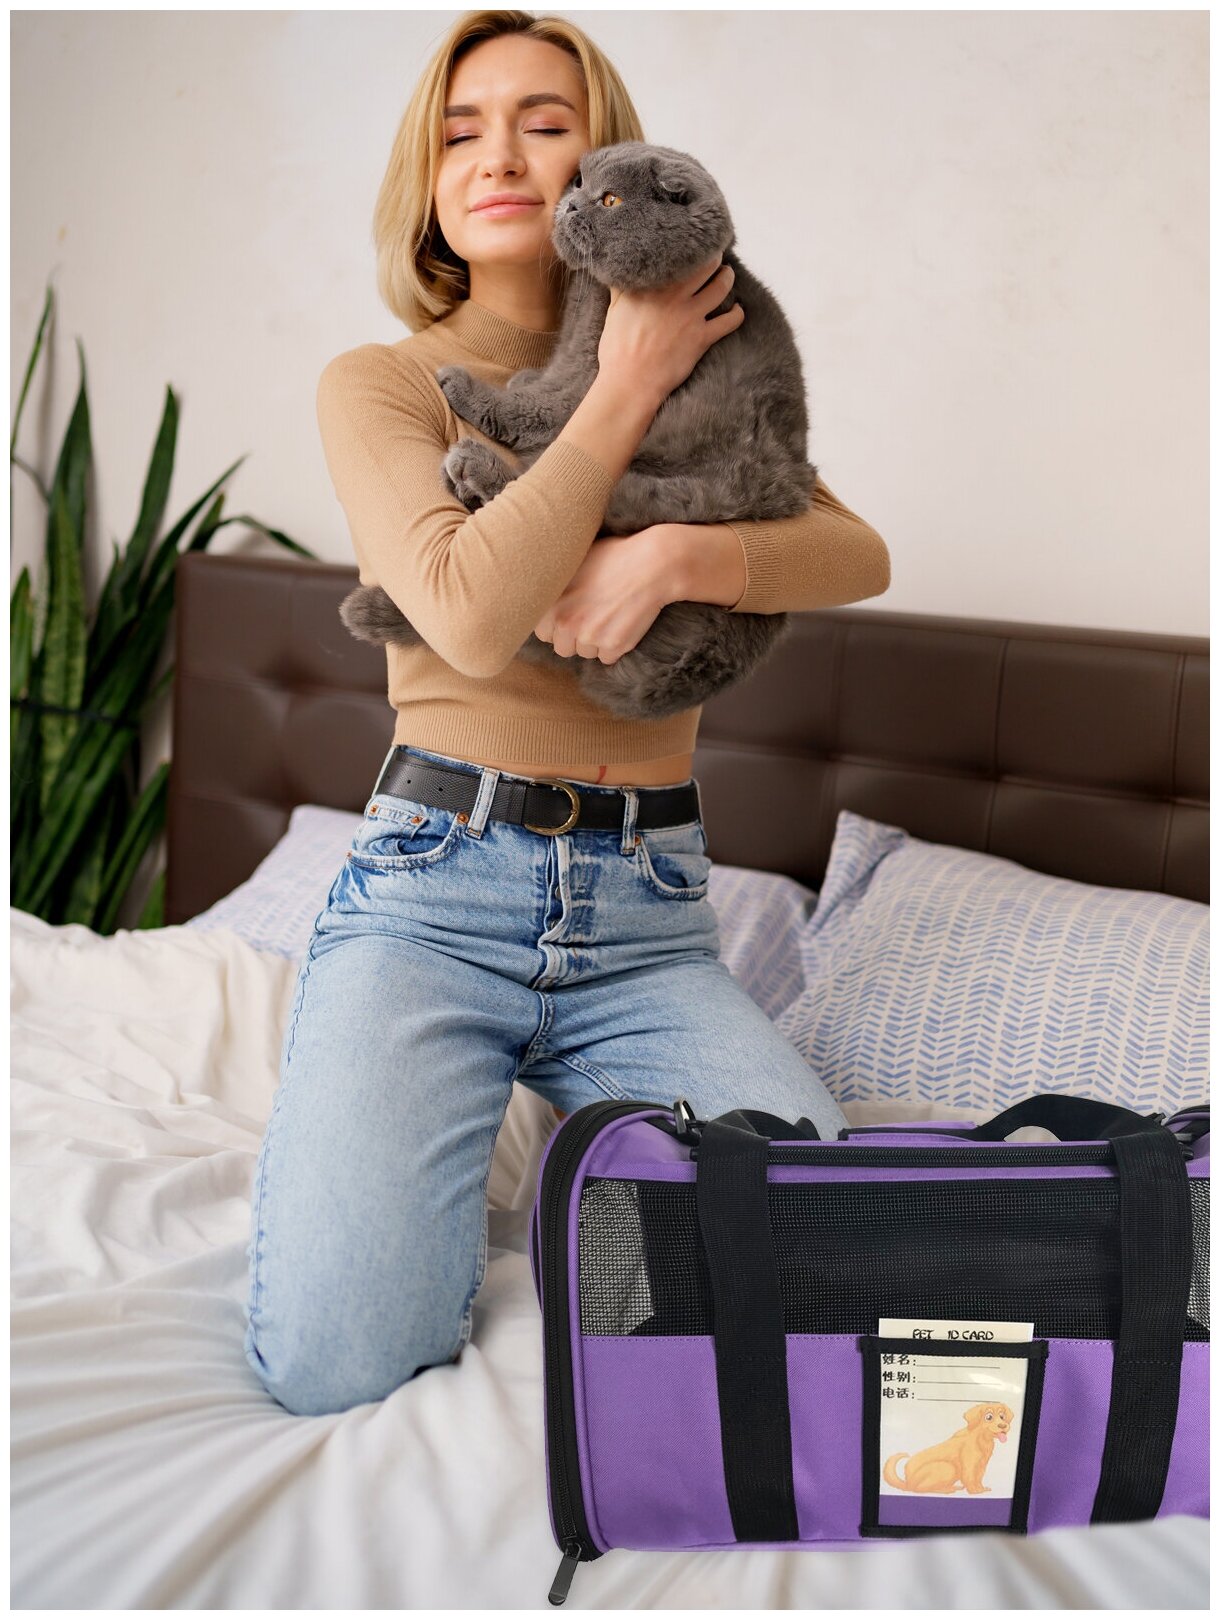 Переноска для животных ZES, сетчатая сумка для переноски кошек и собак мелких пород, размер 45х28х28, фиолетового цвета - фотография № 9